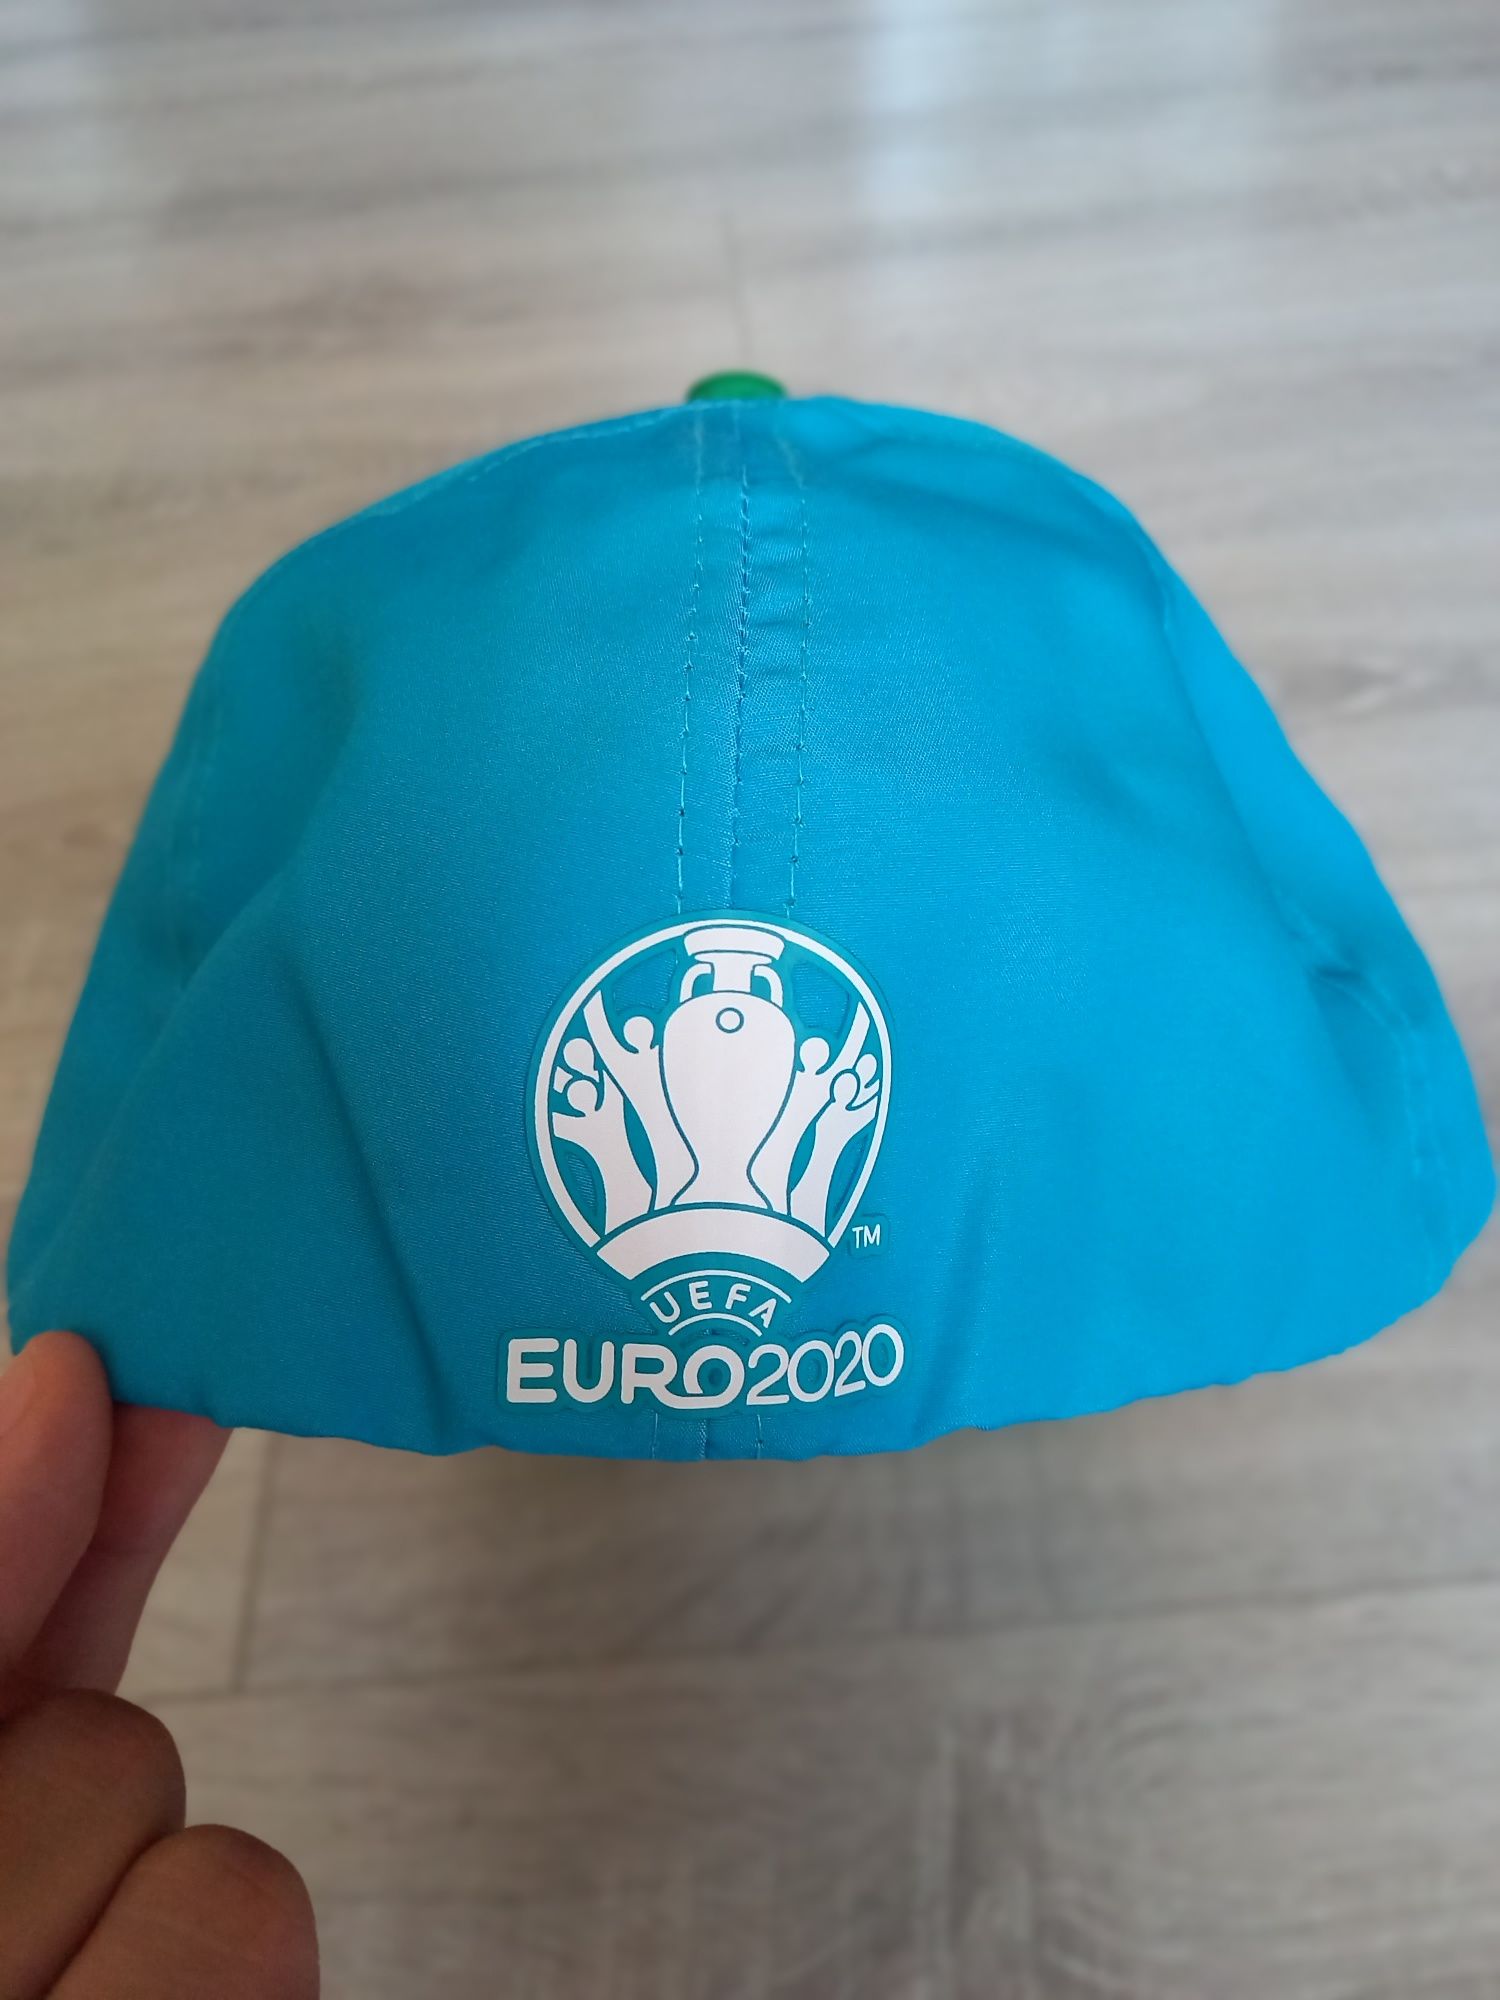 Vând sapca Heineken Euro 2020